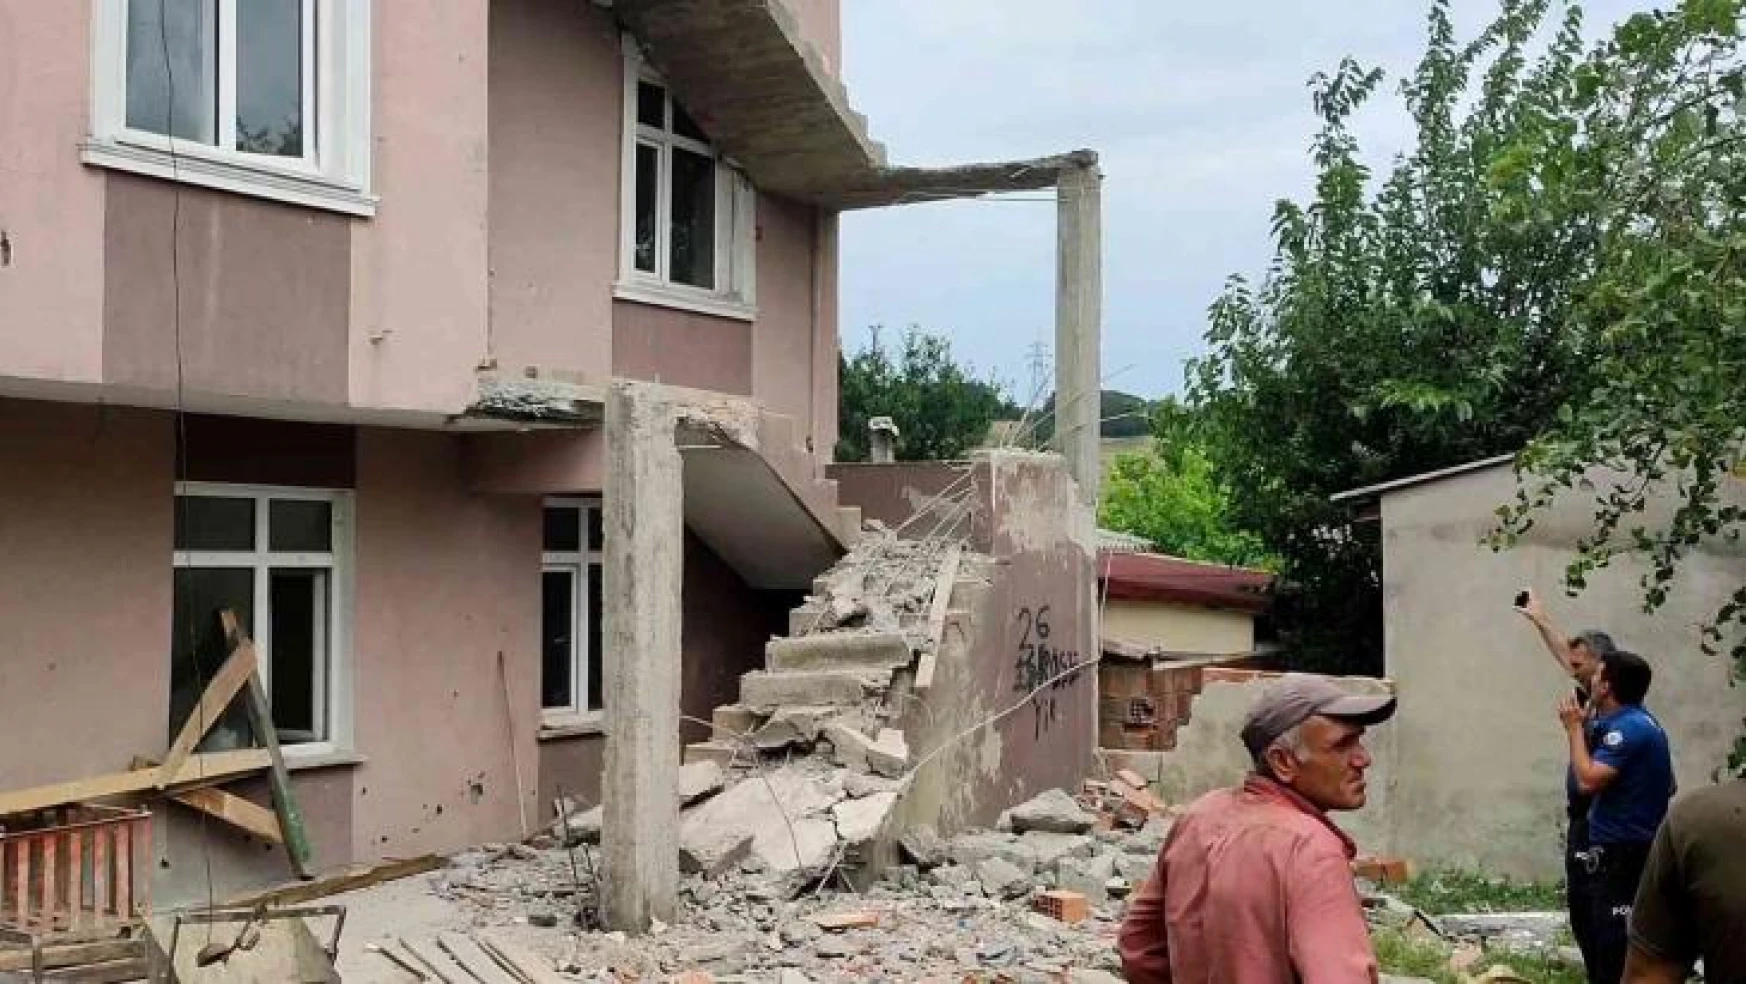 Arnavutköy'de binanın tadilatı sırasında merdiven çöktü: 1 işçi yaralandı